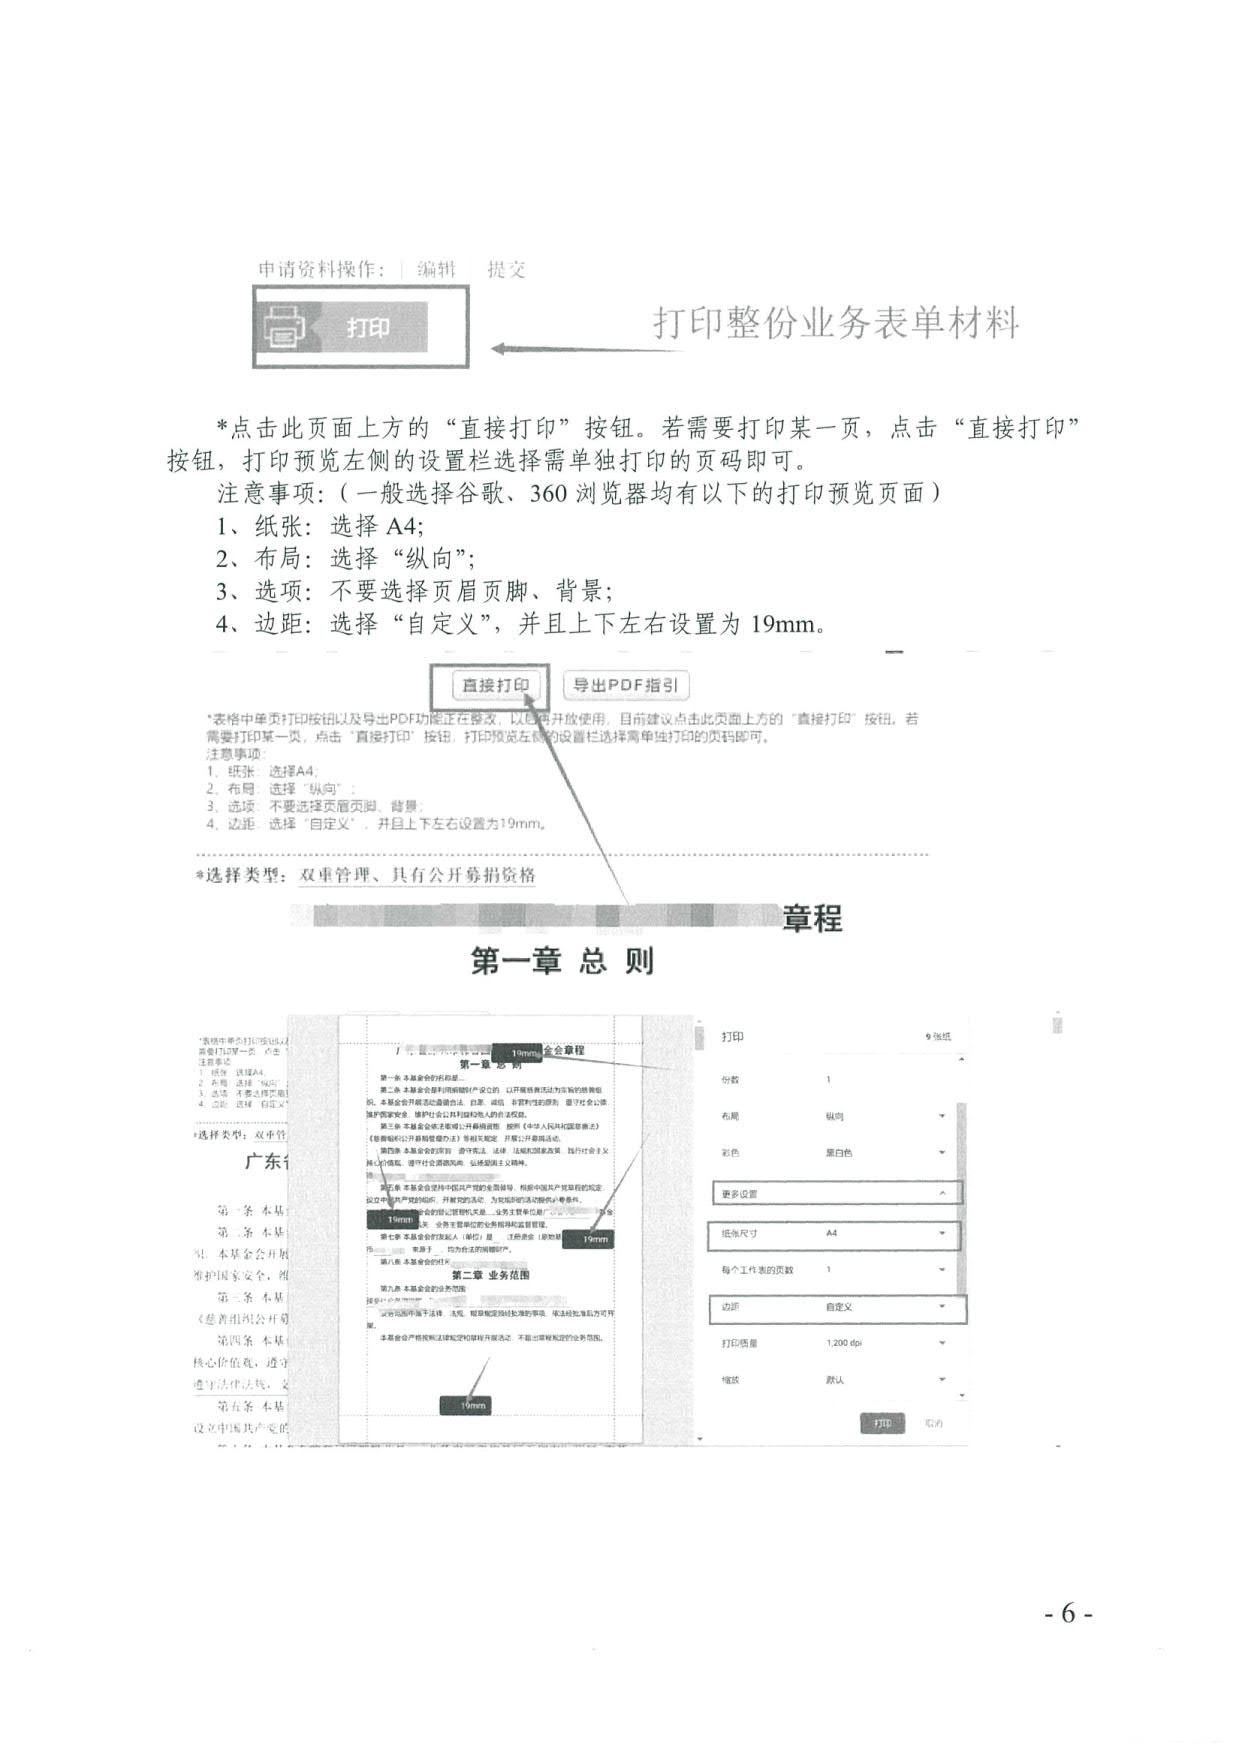 广东省社会组织管理局关于更新基金会章程核准等申报流程的通知(2)_6.jpg